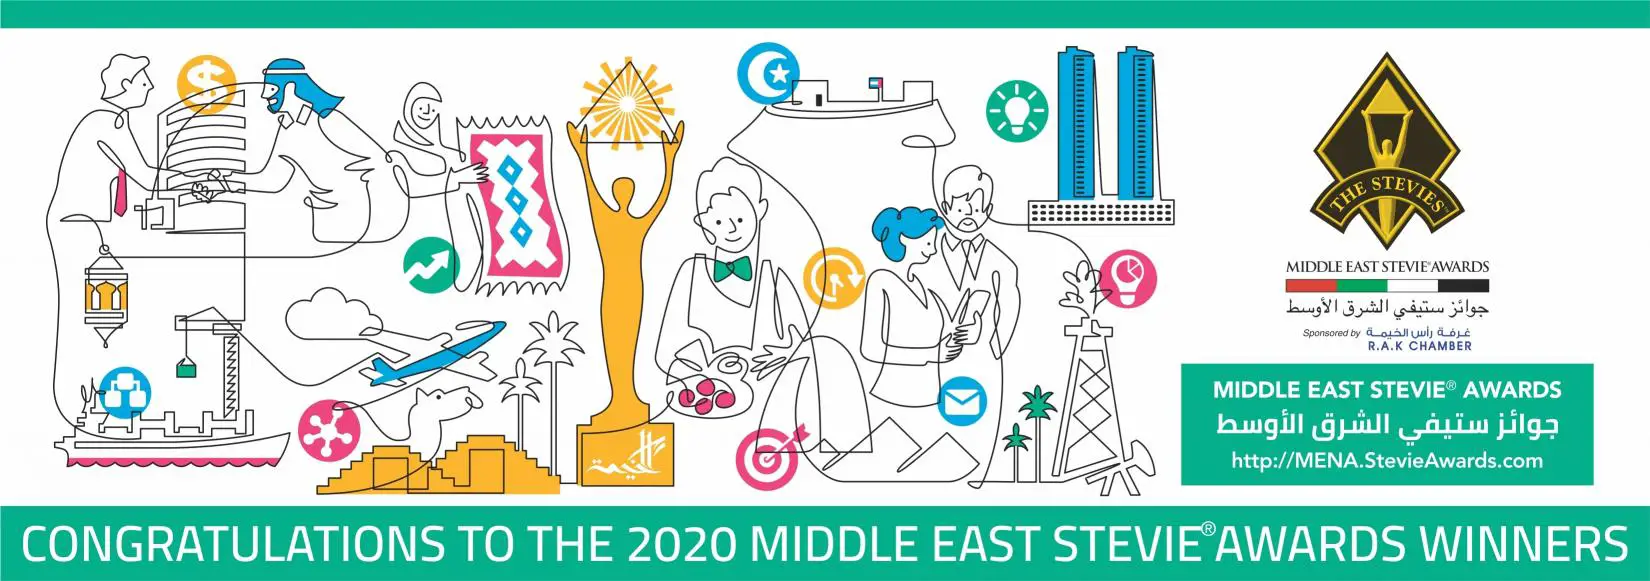 L’annonce des lauréats du Middle East Stevie Awards 2020 (Graphic: Business Wire)